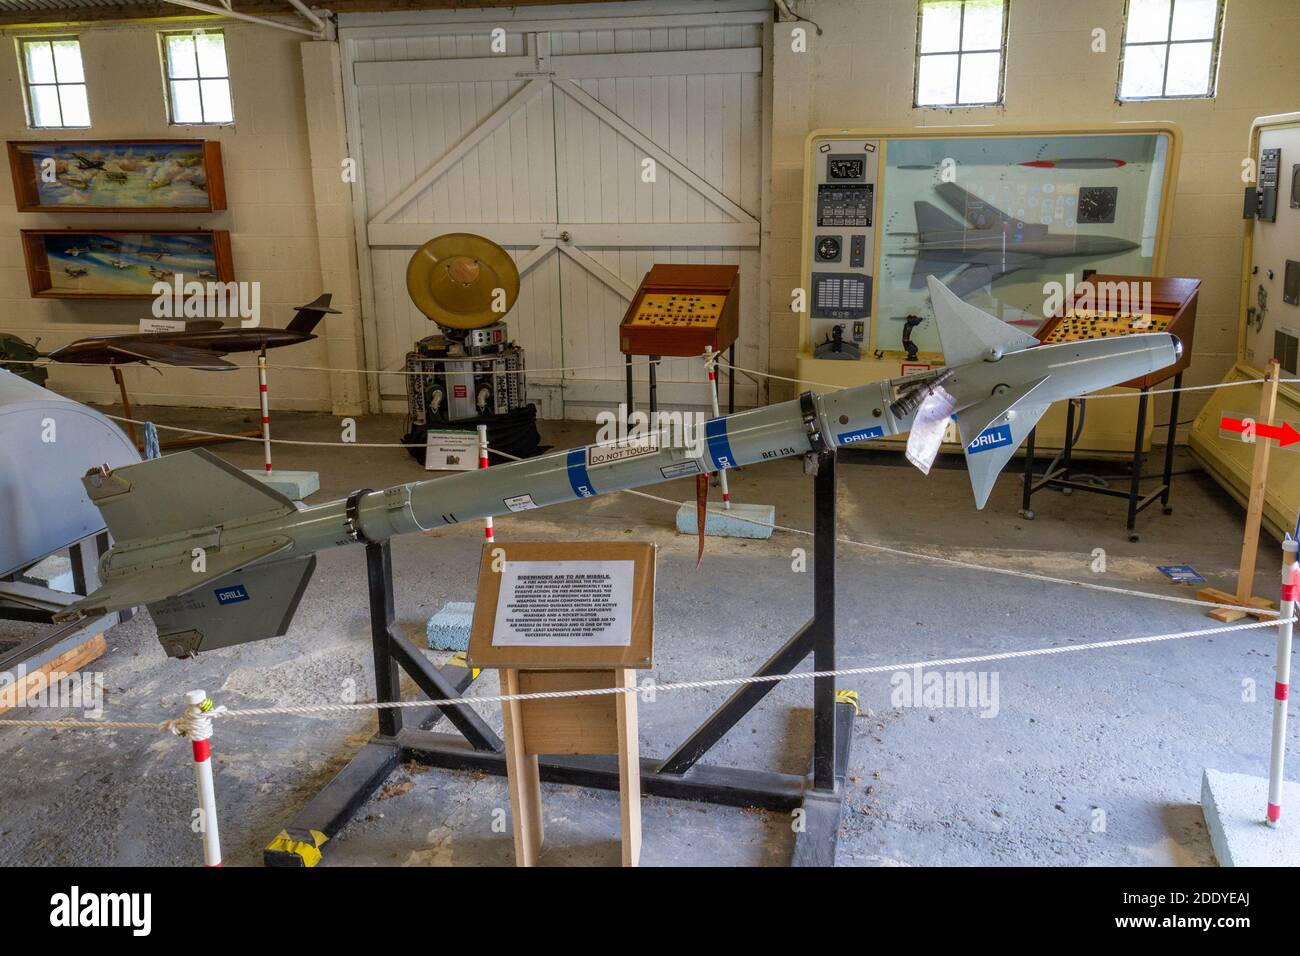 Eine Sidewinder-Luft-Rakete, Thorpe Camp Visitor Center, eine Kaserne der Royal Air Force aus dem Zweiten Weltkrieg, Lincolnshire, Großbritannien. Stockfoto